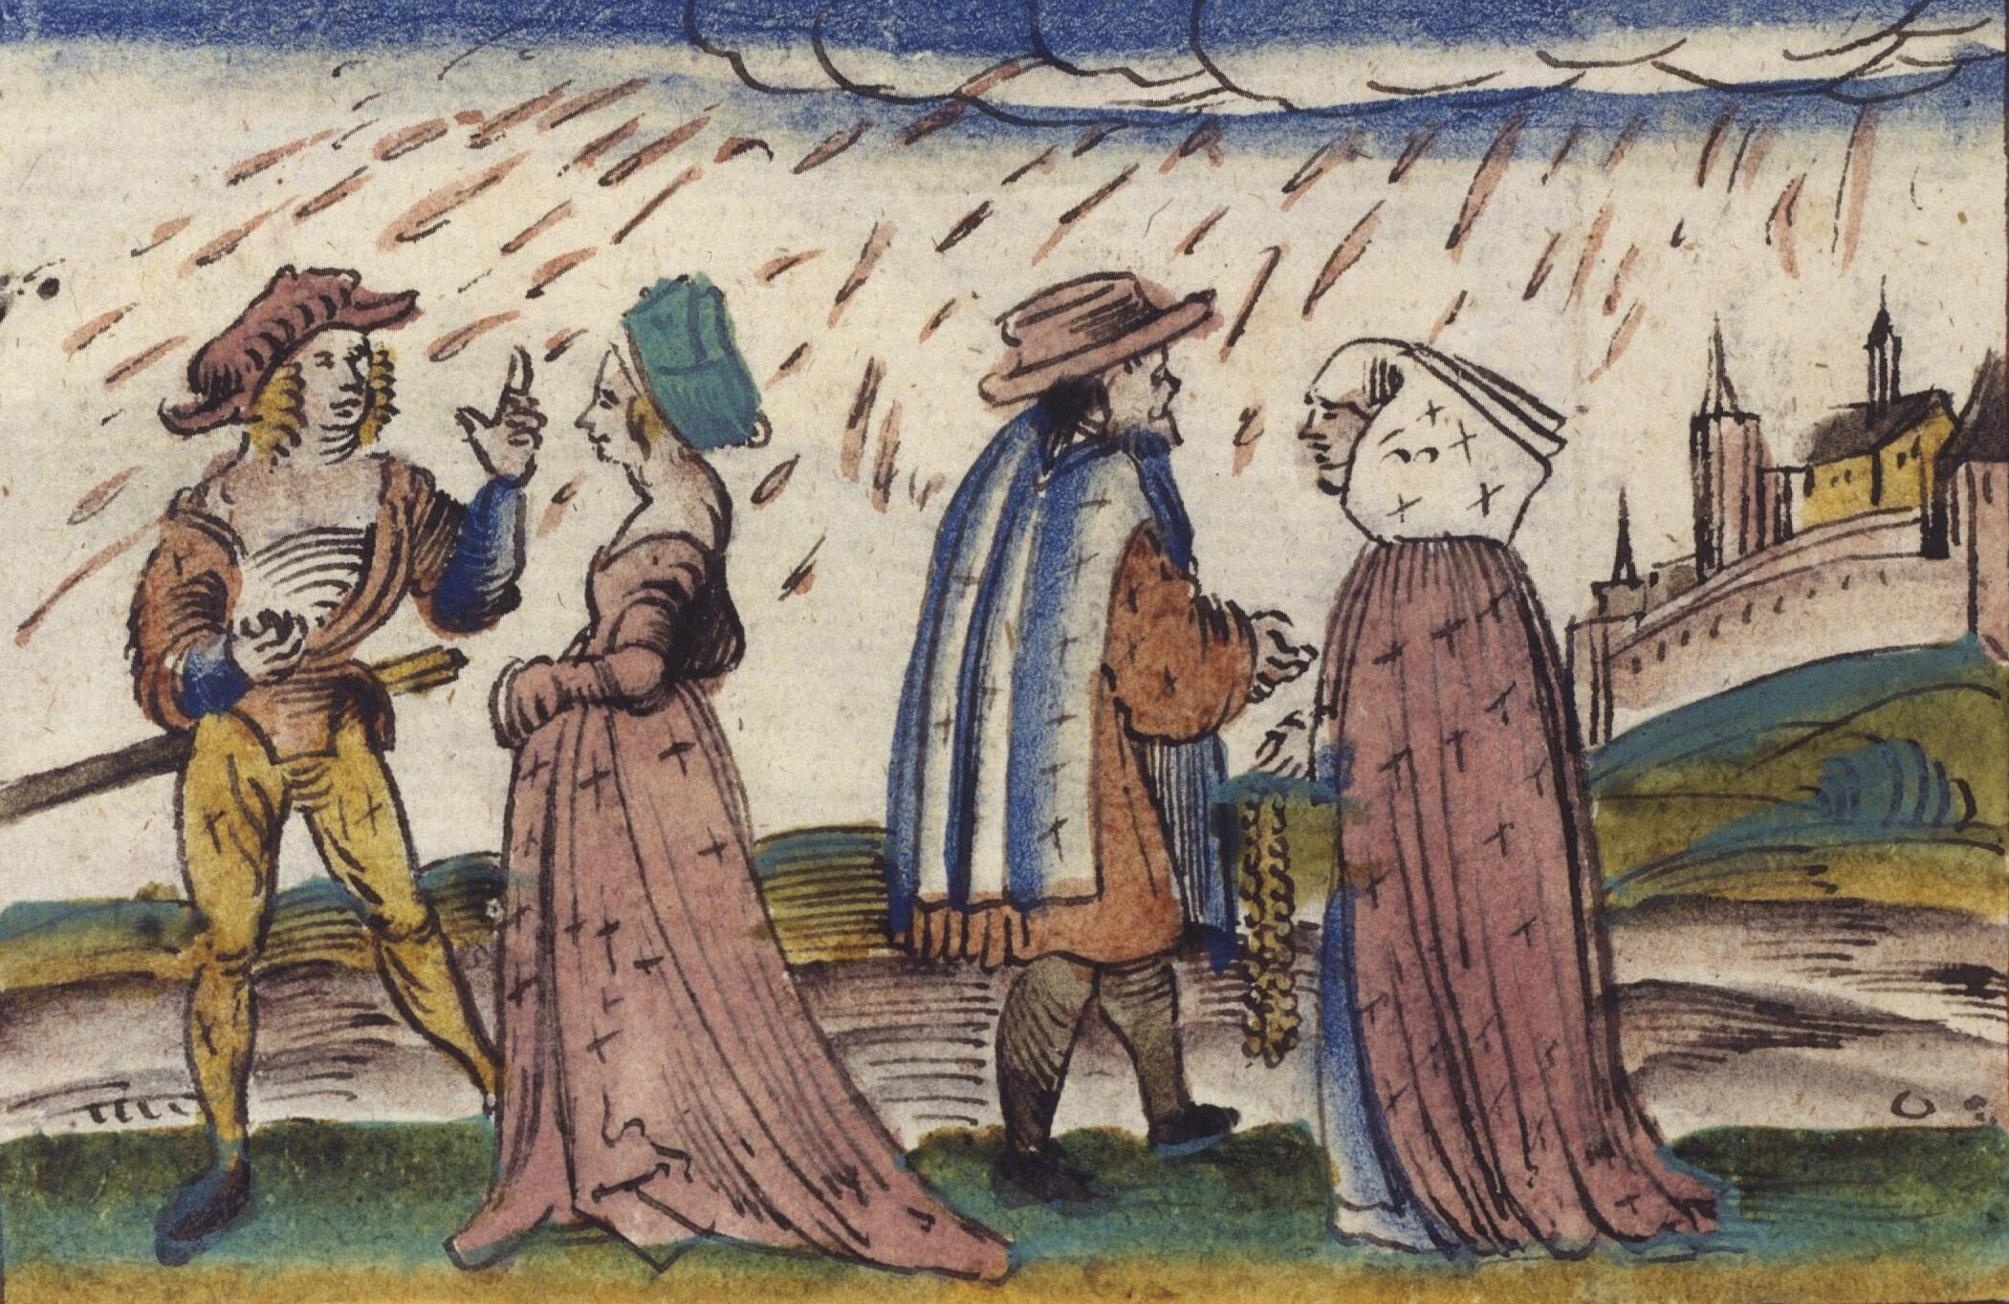 Einfache Zeichnung: Zwei Männer und zwei Frauen stehen auf einer Wiese. Es regnet. Die Männer tragen Hüte, die Frauen andere Kopfbedeckungen. Im Hintergrund ist eine ummauerte Stadt zu sehen.  © Bildarchiv Austria, Über Wunderzeichen, Zwei Paare im Freien im Regen, 1500 bis 1599